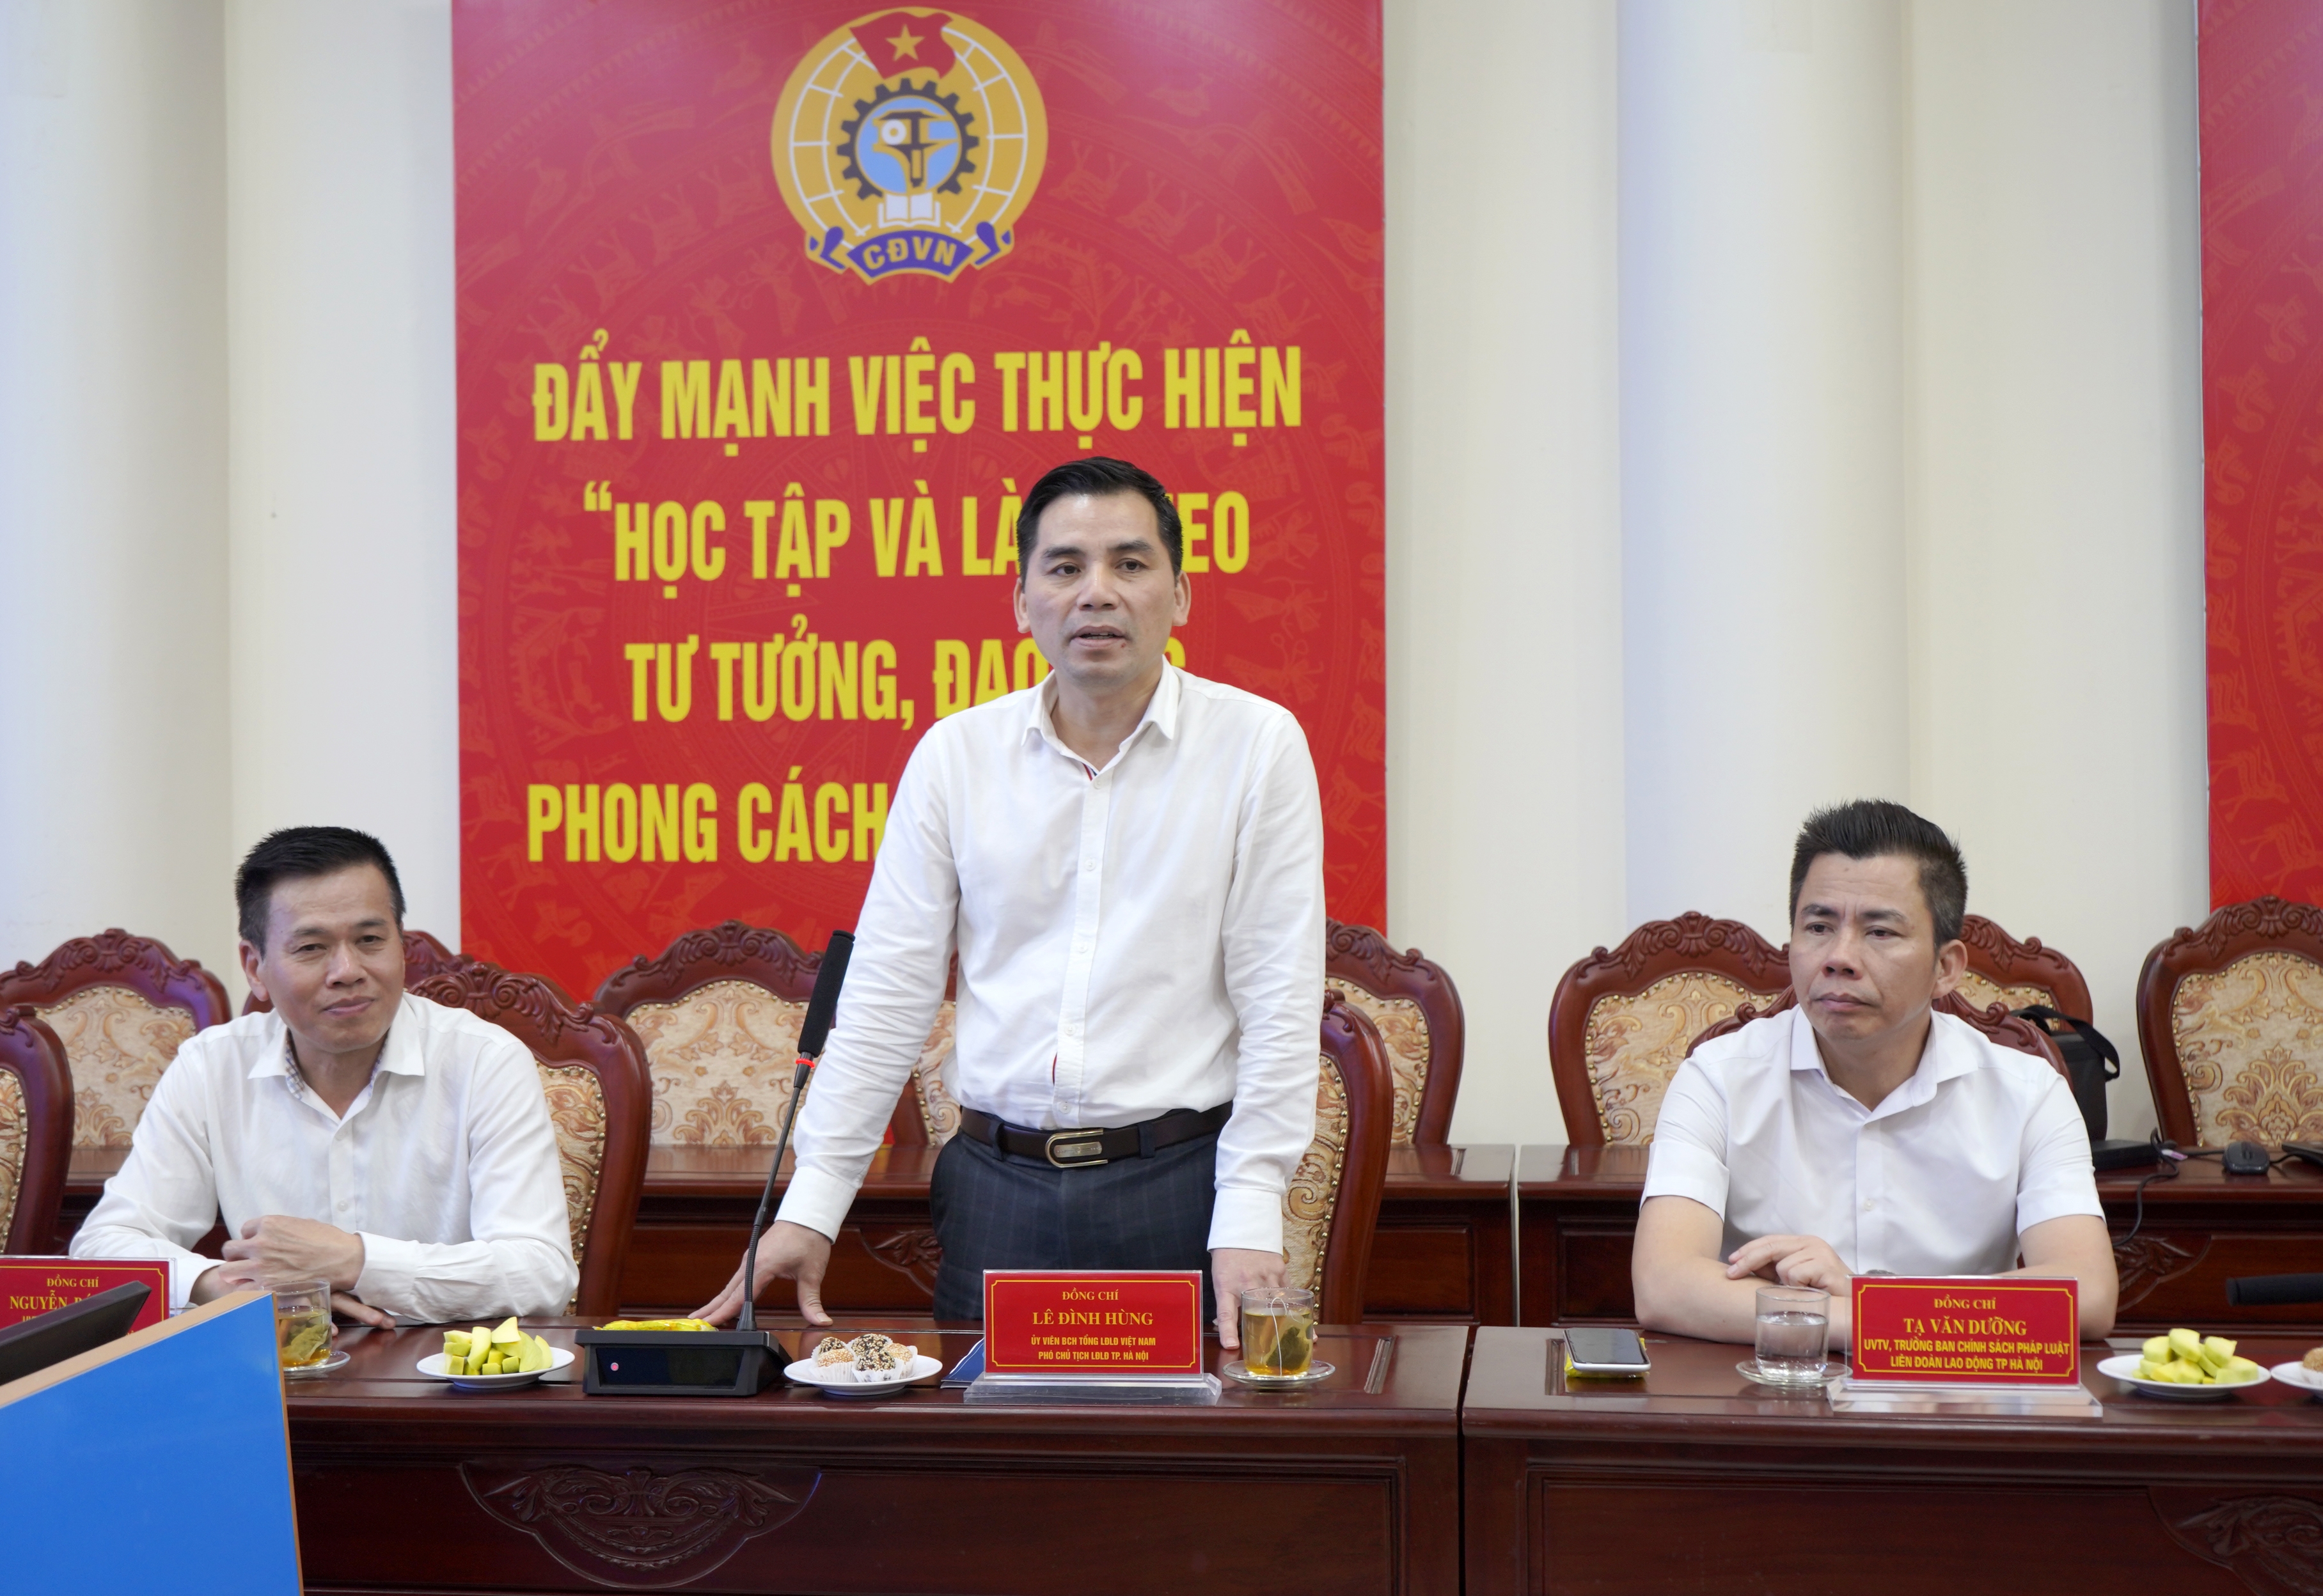 LĐLĐ thành phố Hà Nội và LĐLĐ tỉnh Sóc Trăng trao đổi kinh nghiệm hoạt động công đoàn